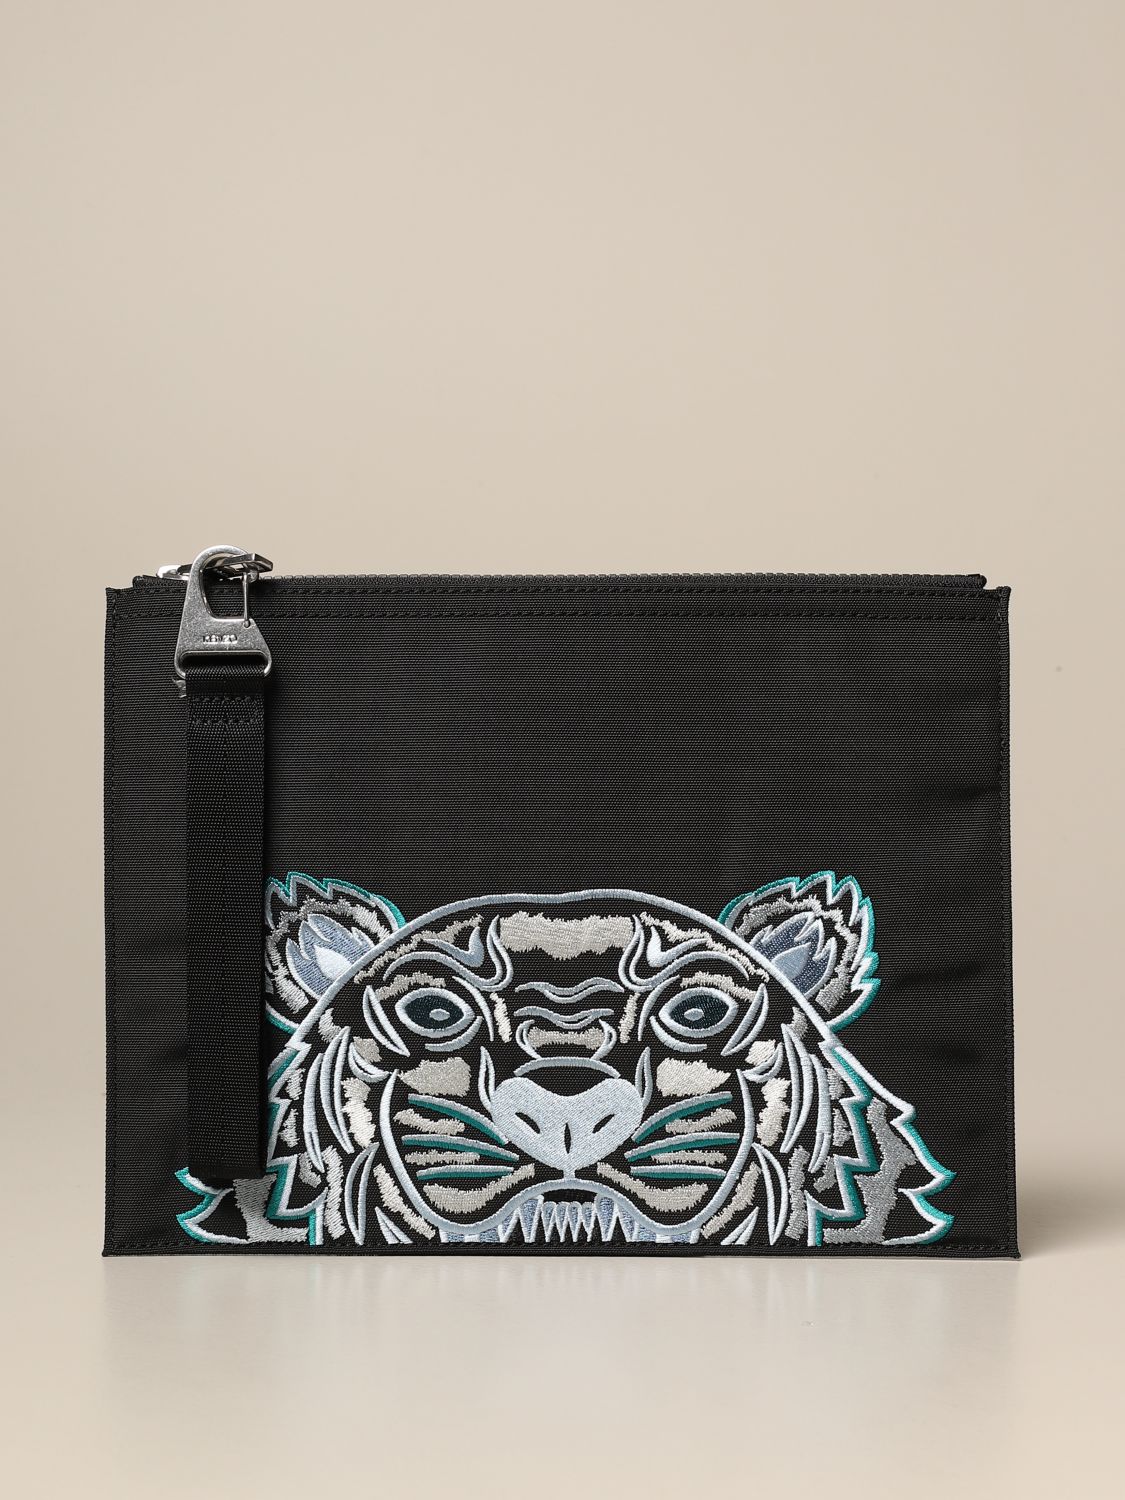 kenzo tiger bag